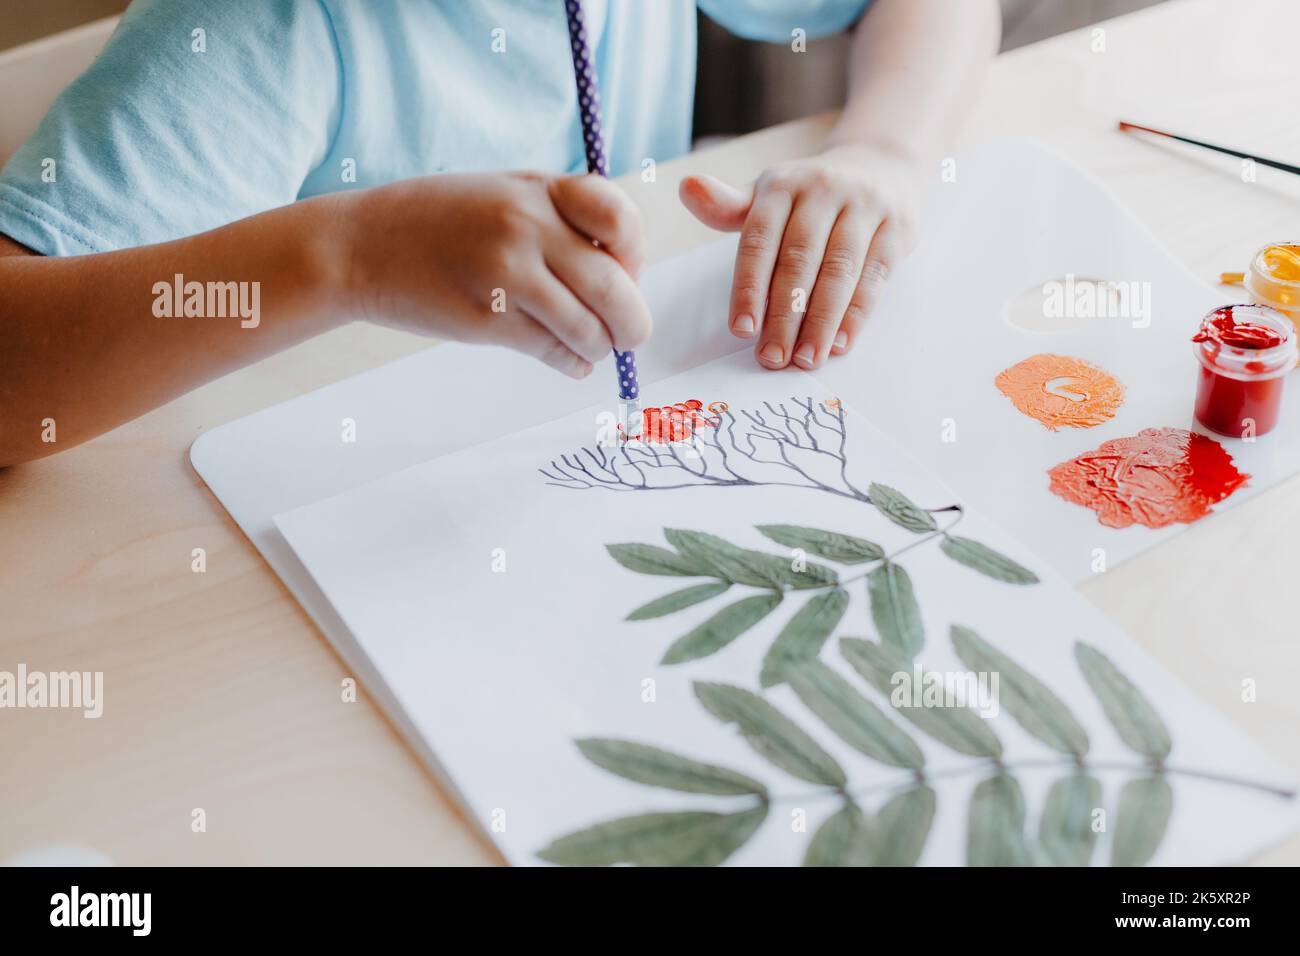 Enfant mignon assis au bureau et dessin de baies de rowanberries sur la feuille d'album avec des feuilles de rowan sèches Banque D'Images